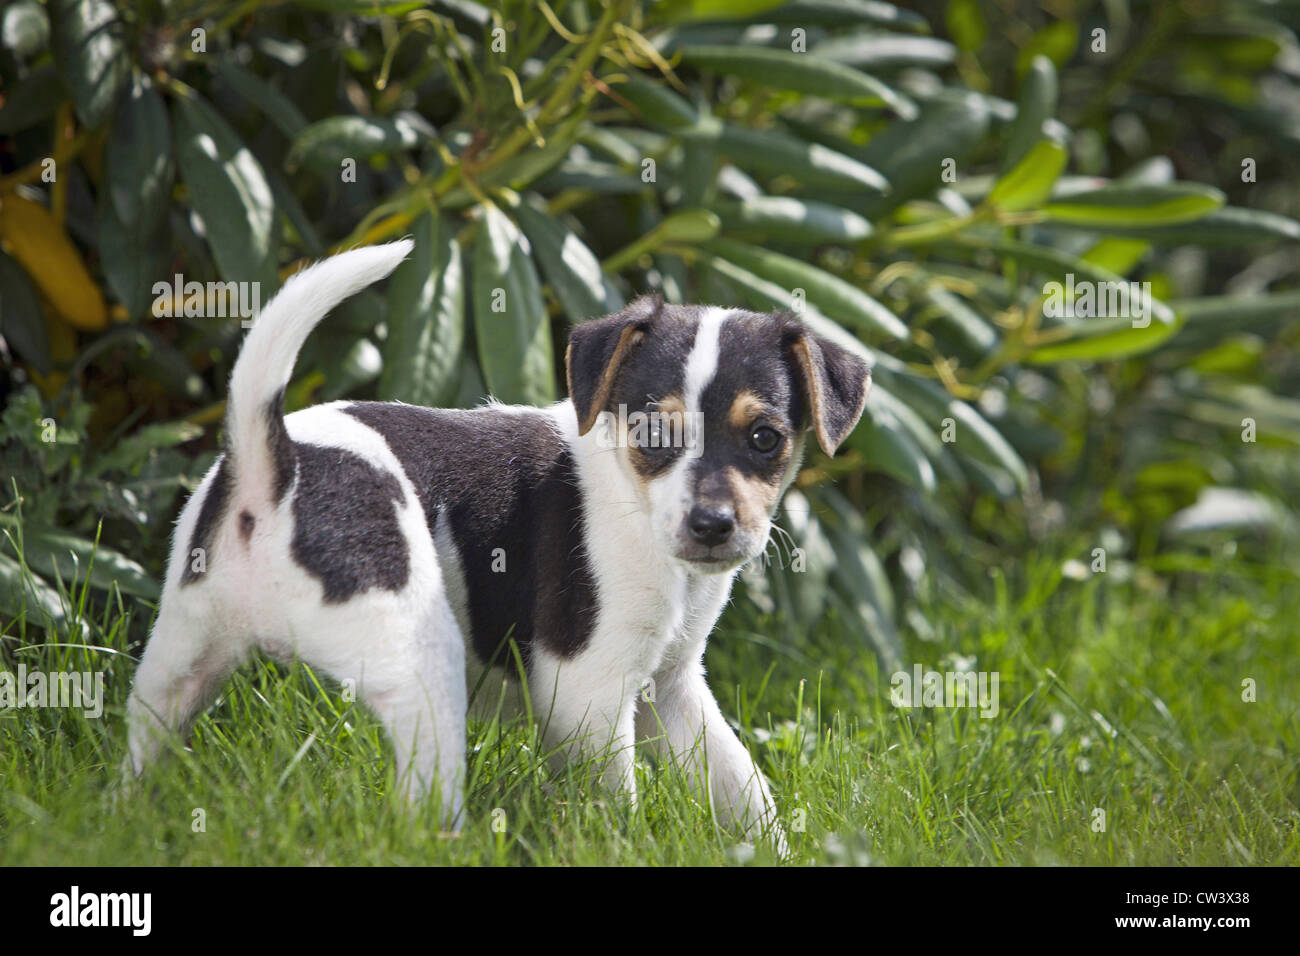 Danés Sueco Farmdog/, Dansk Svensk gardshund. Cachorro de pie en el césped en un jardín. Foto de stock